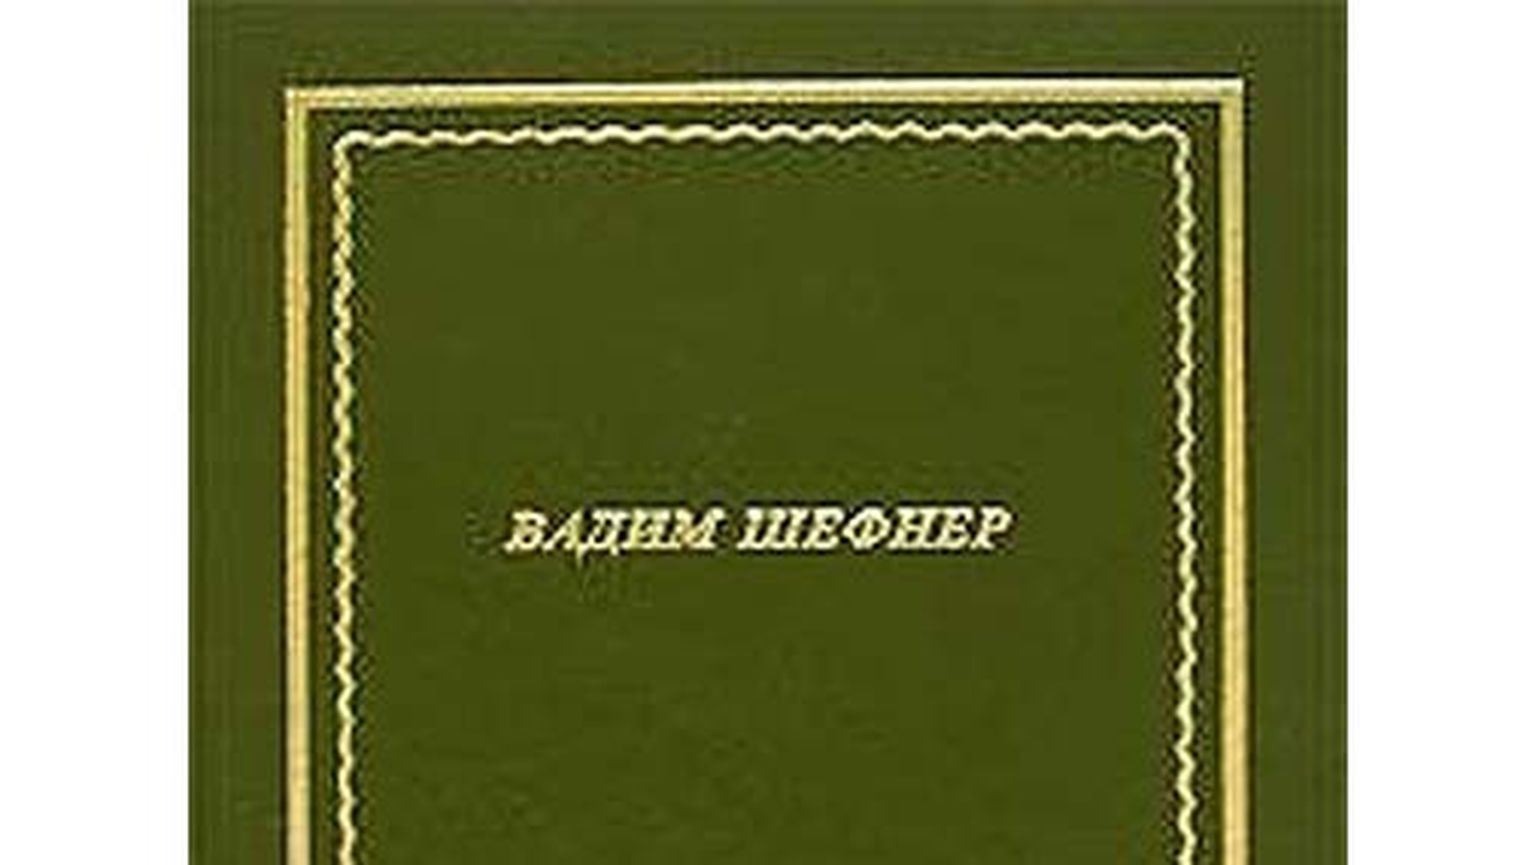 Фрагмент обложки книги Вадима Шефнера.